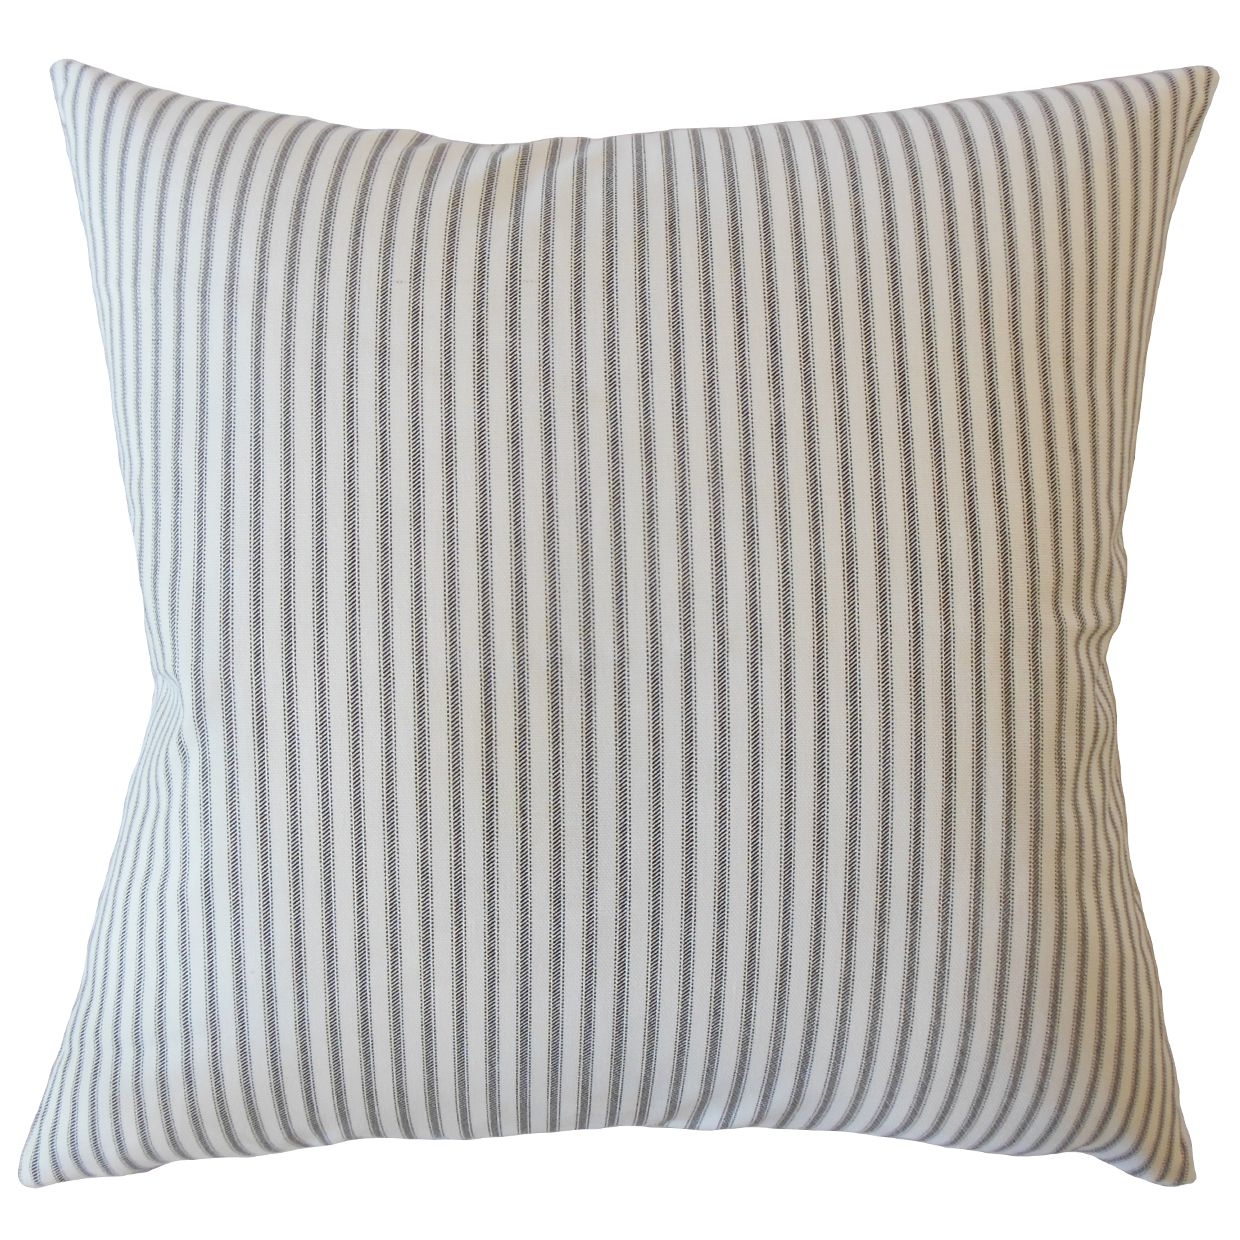 Ticking Stripe Pillow, Navy, 18" x 18" - Image 0